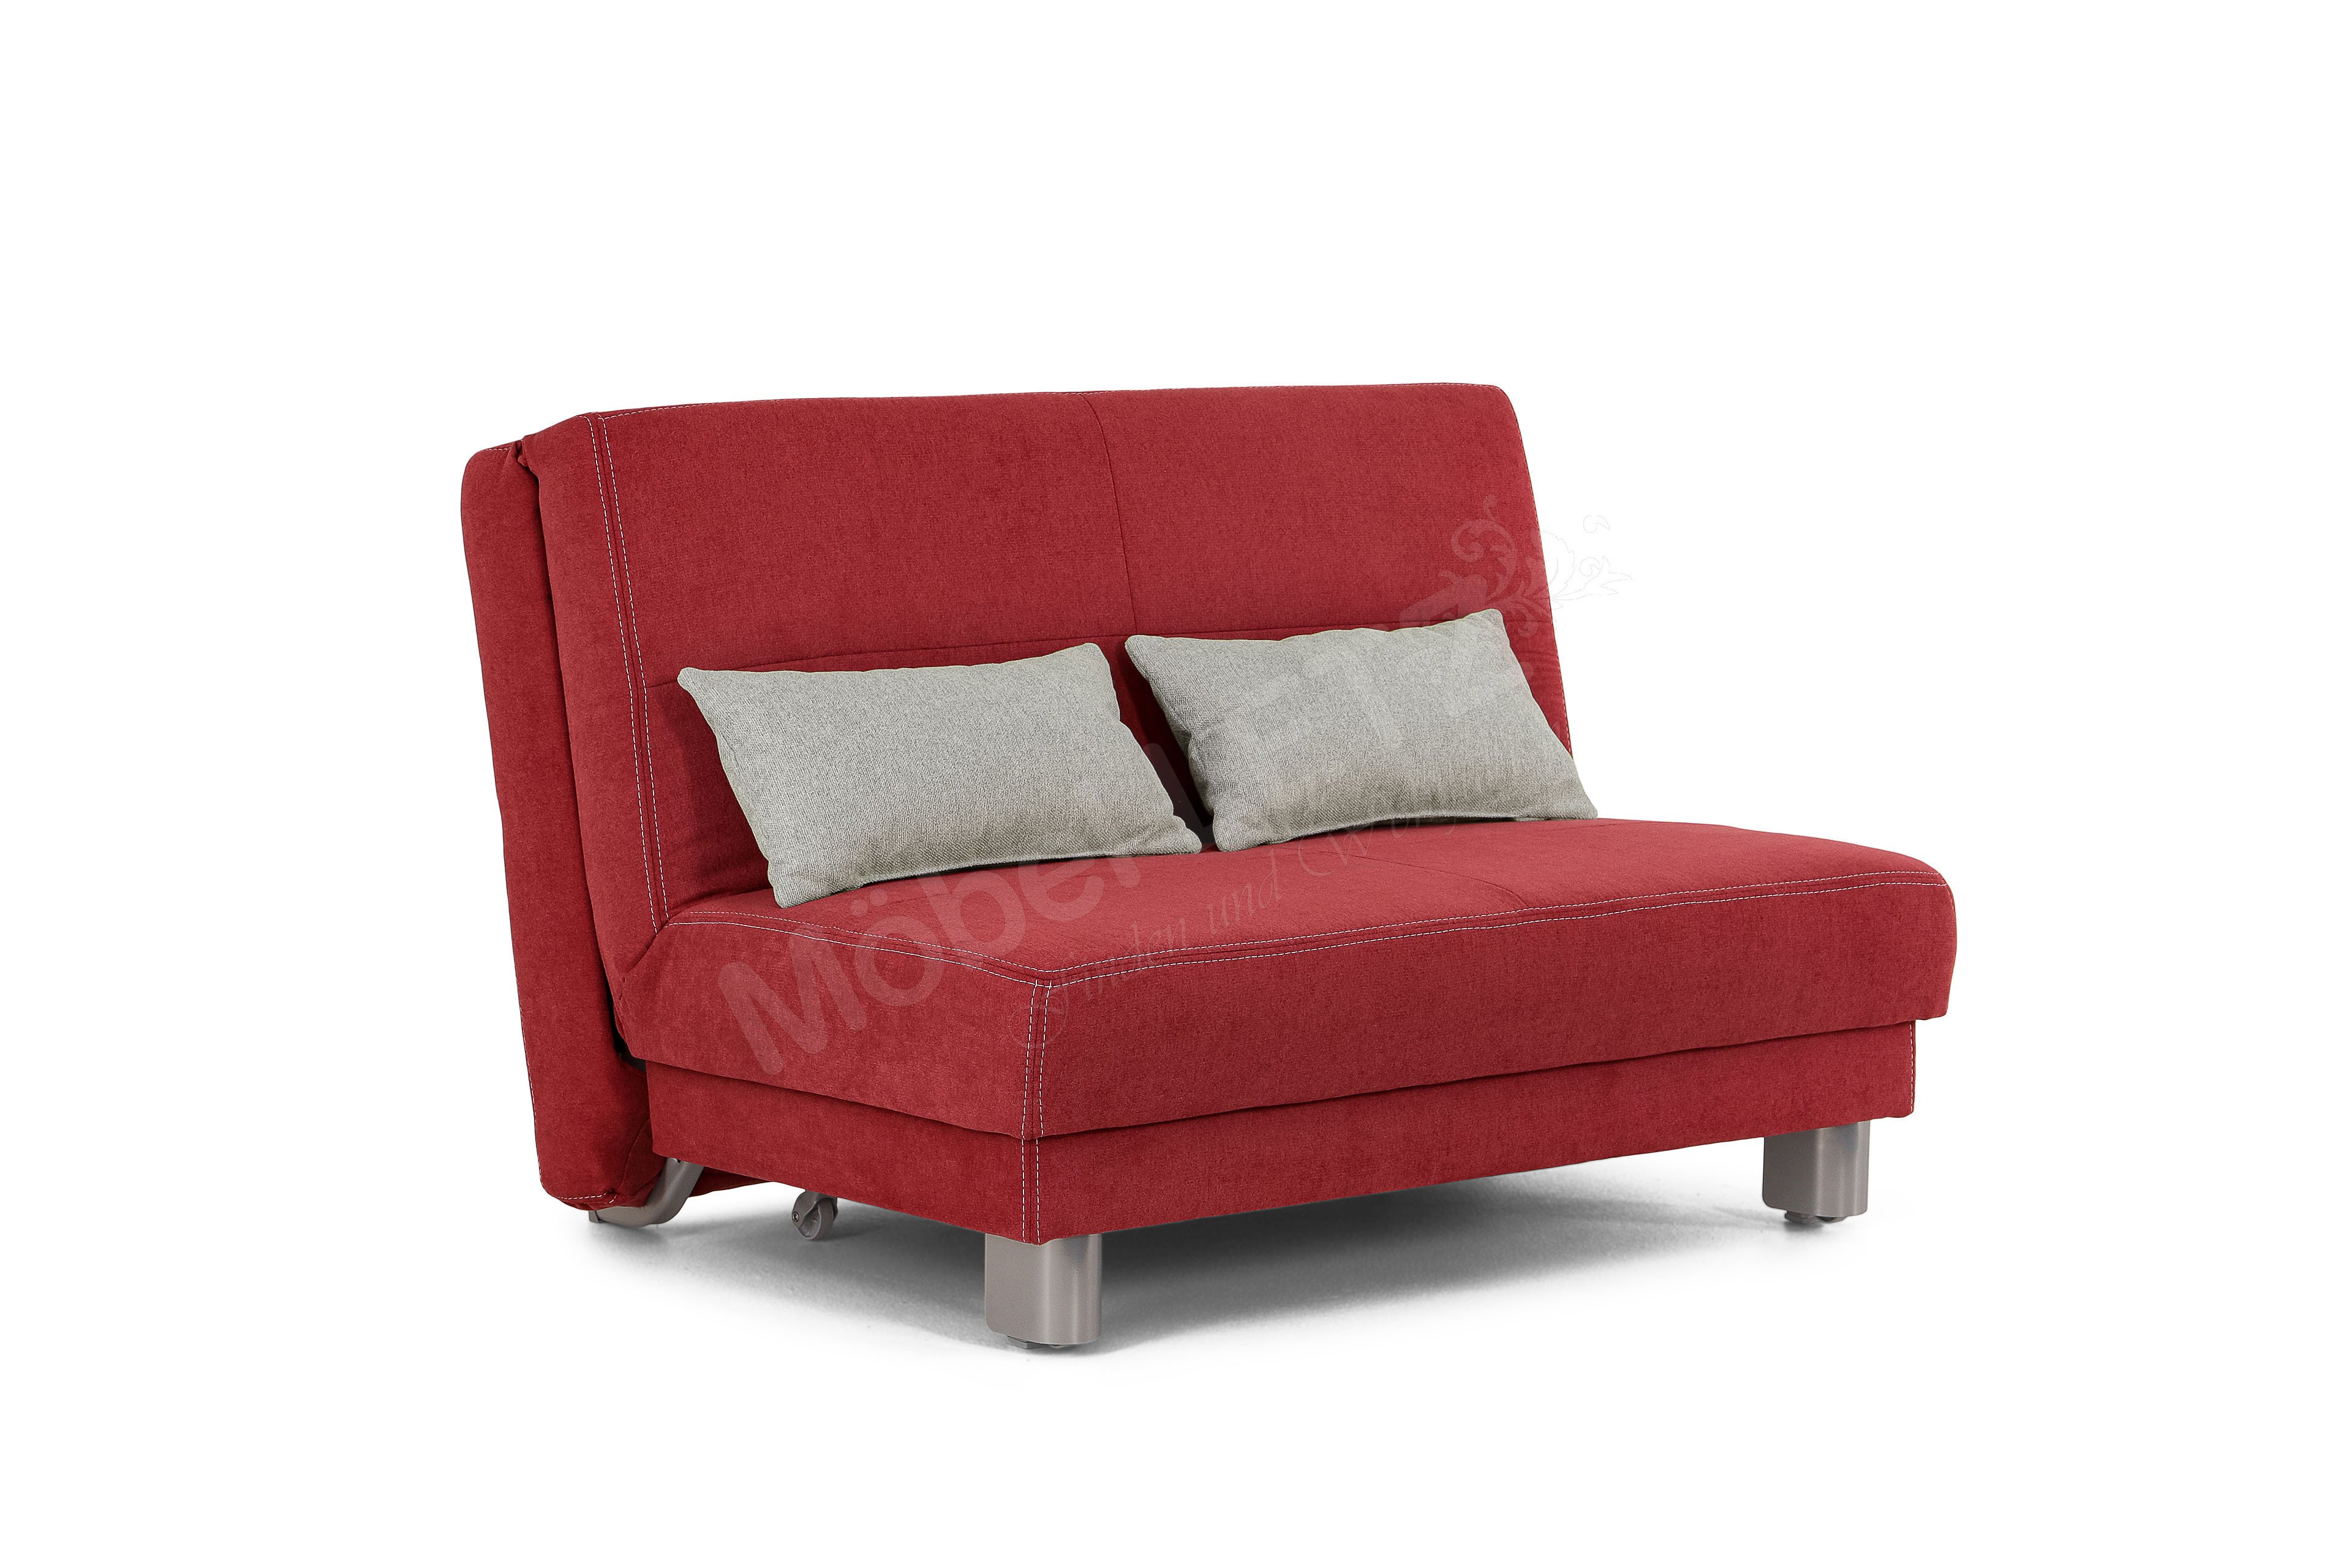 Sofa-Team Gina Schlafsofa 120x195 cm - Letz rot Möbel | Online-Shop bezogen Ihr